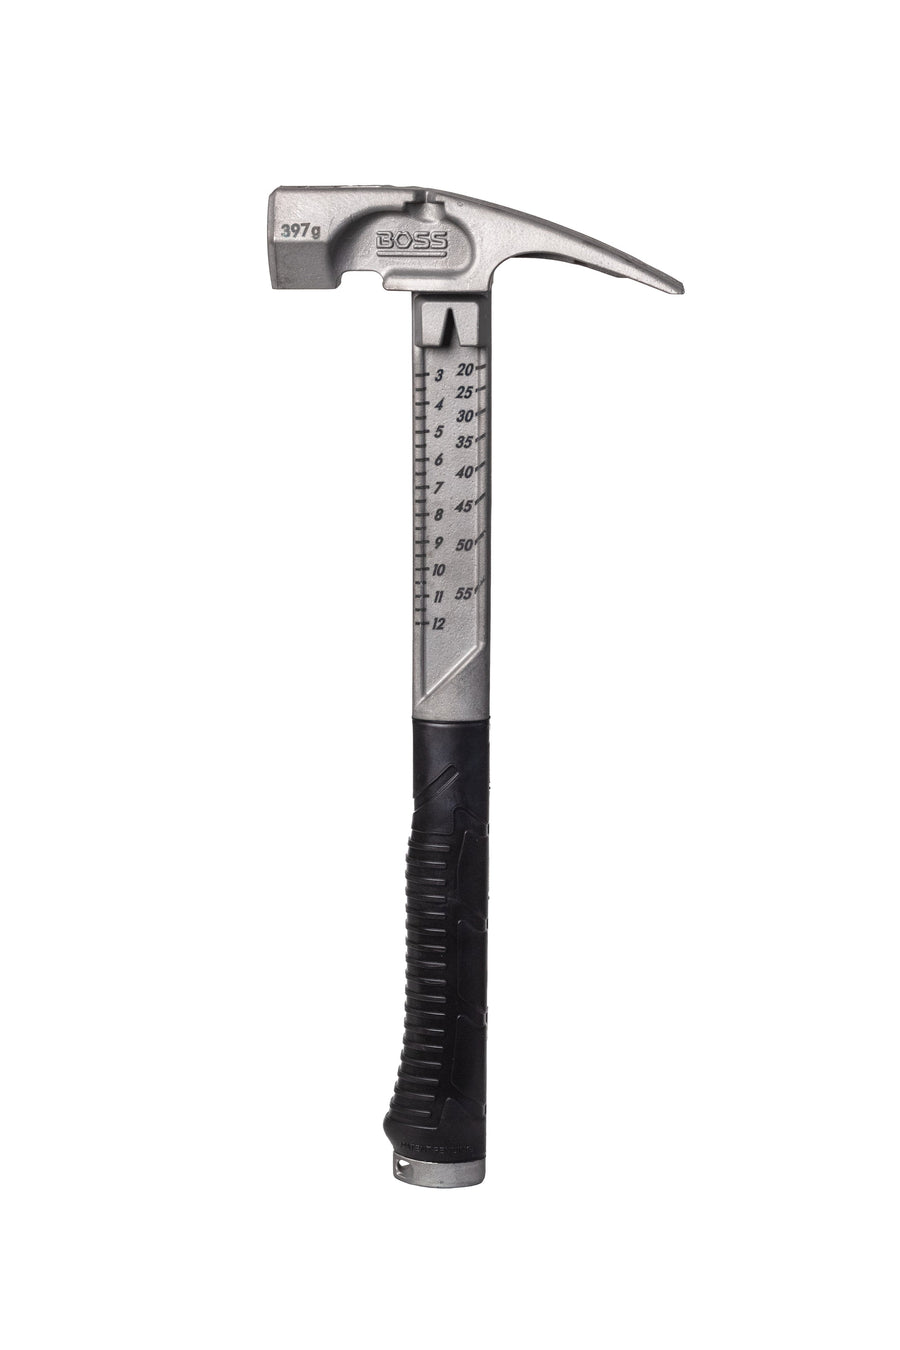 NEW METRIC Pro Plus Titanium Hammer Titanium Boss Hammer Co. 14 oz Smooth Face 